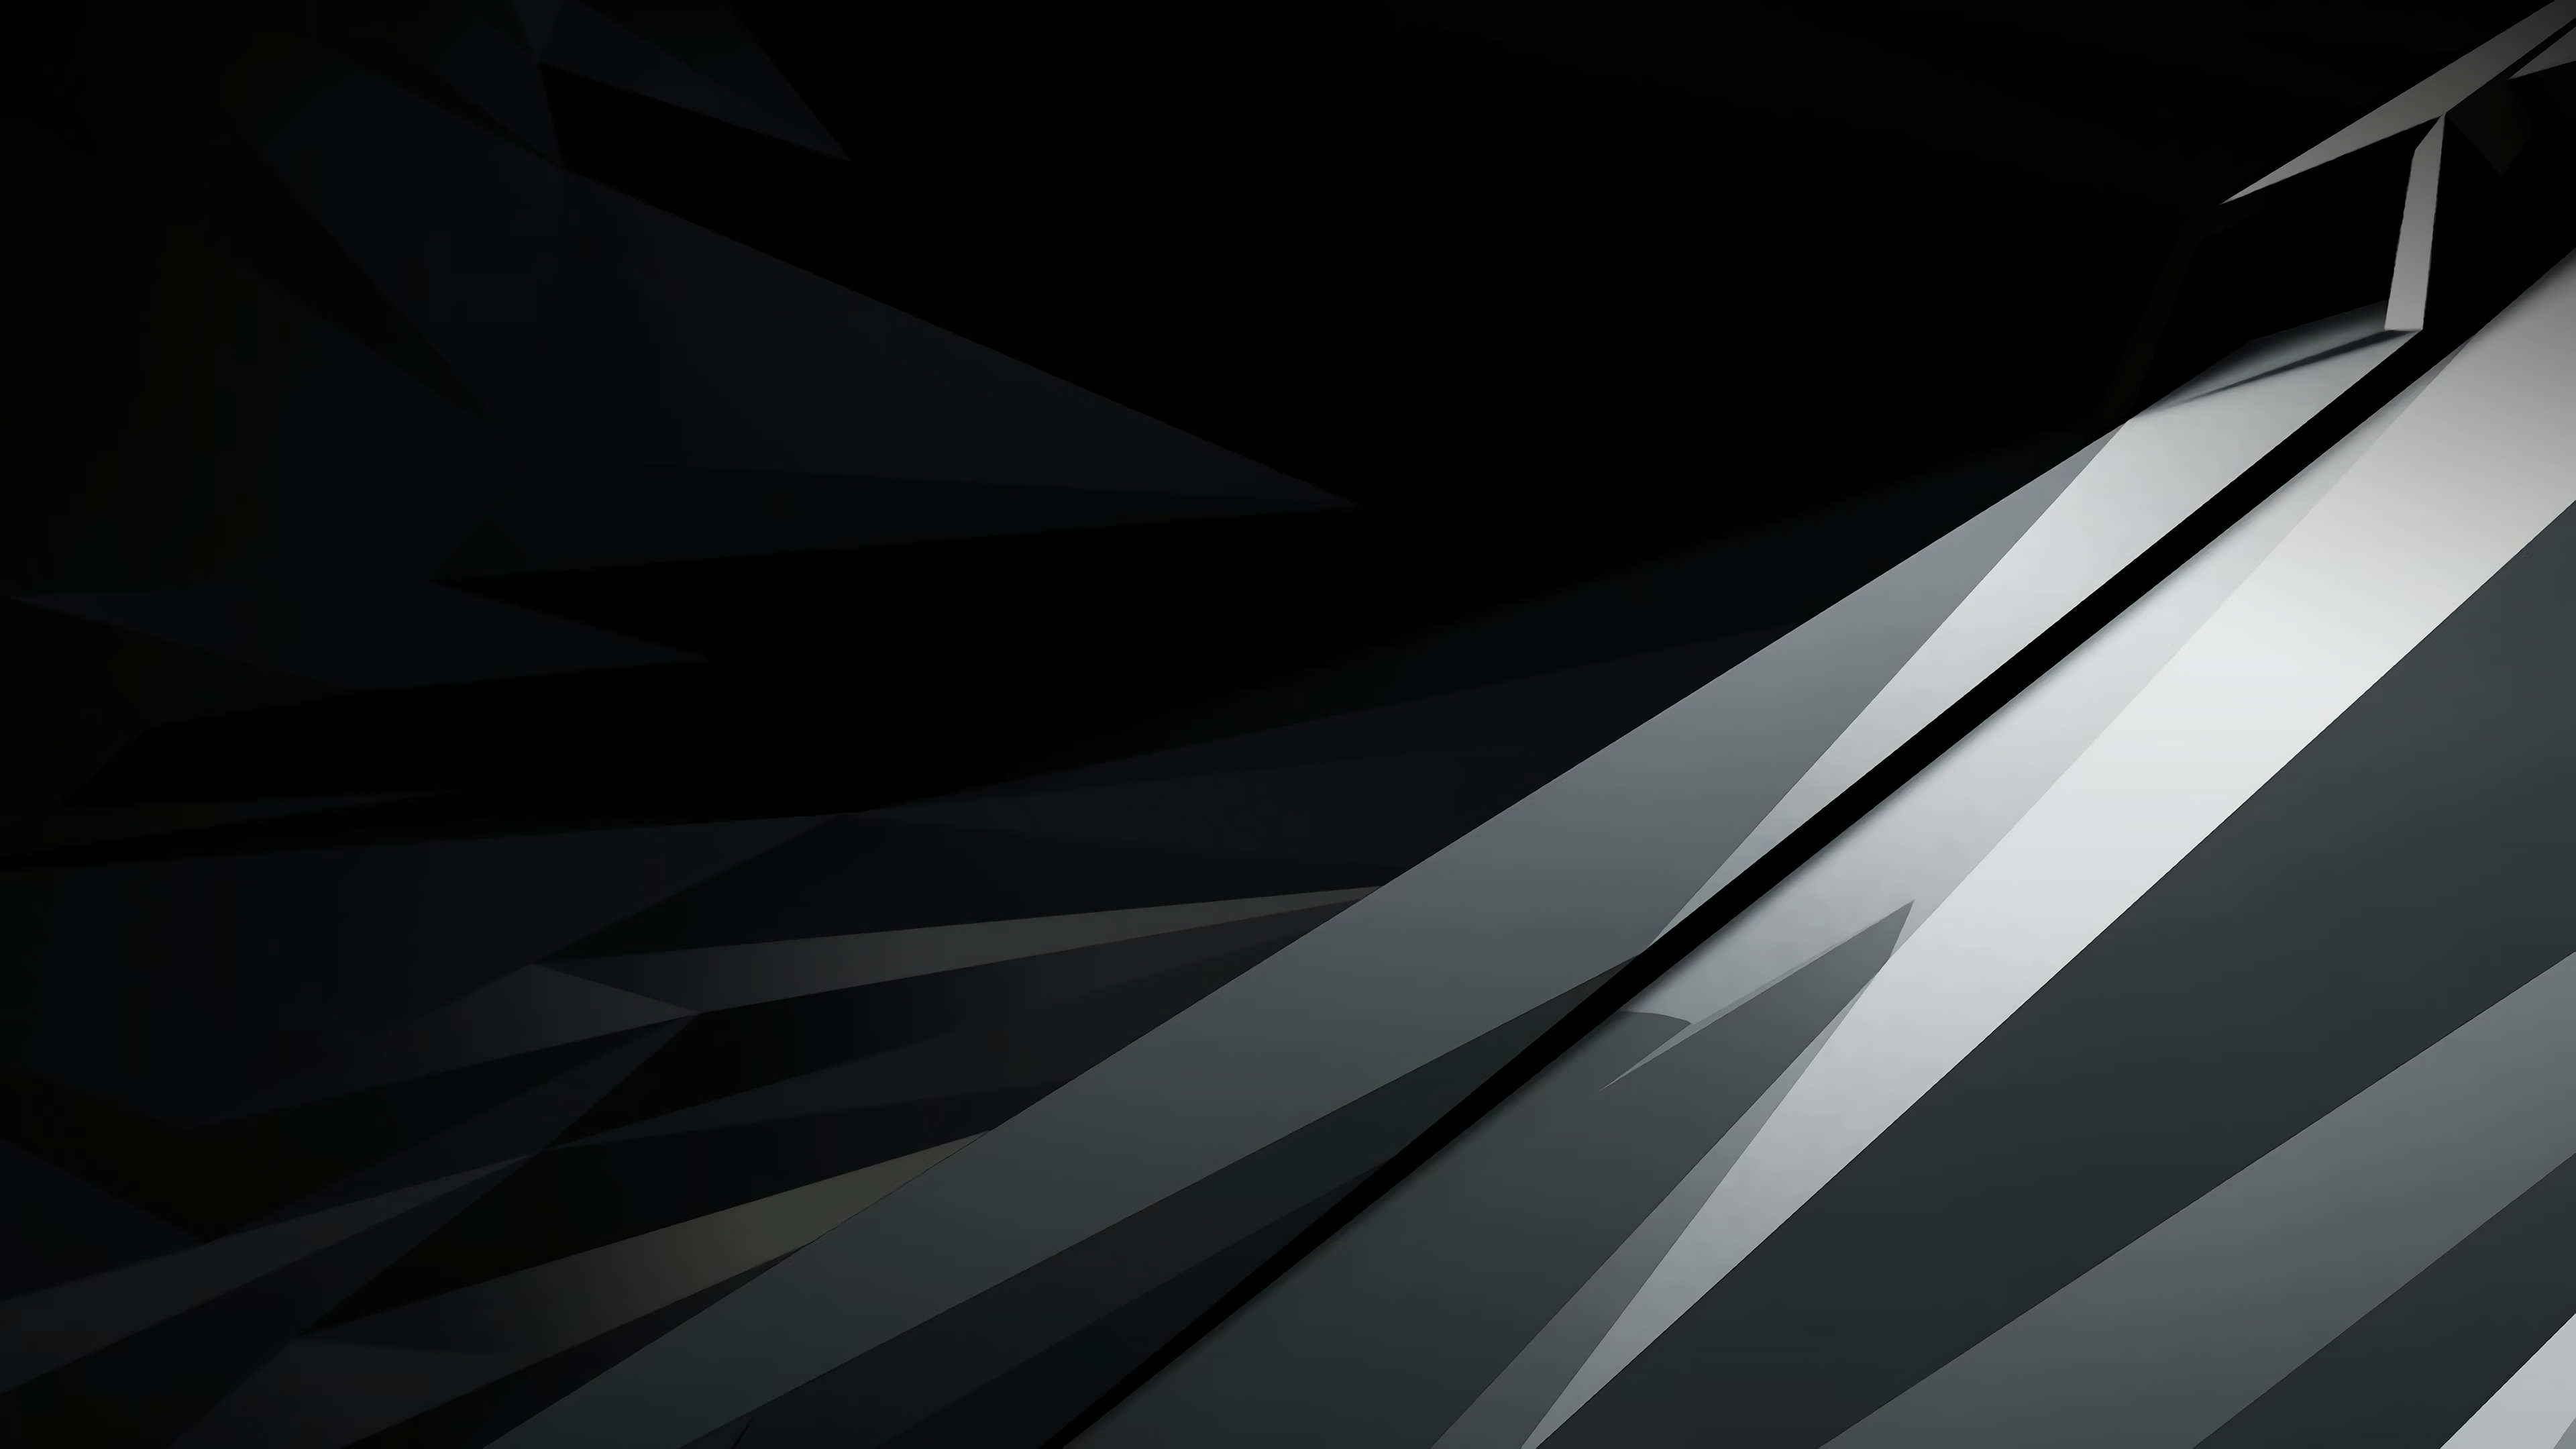 General 3840x2160 Nvidia Nvidia RTX line art dark background gray abstract